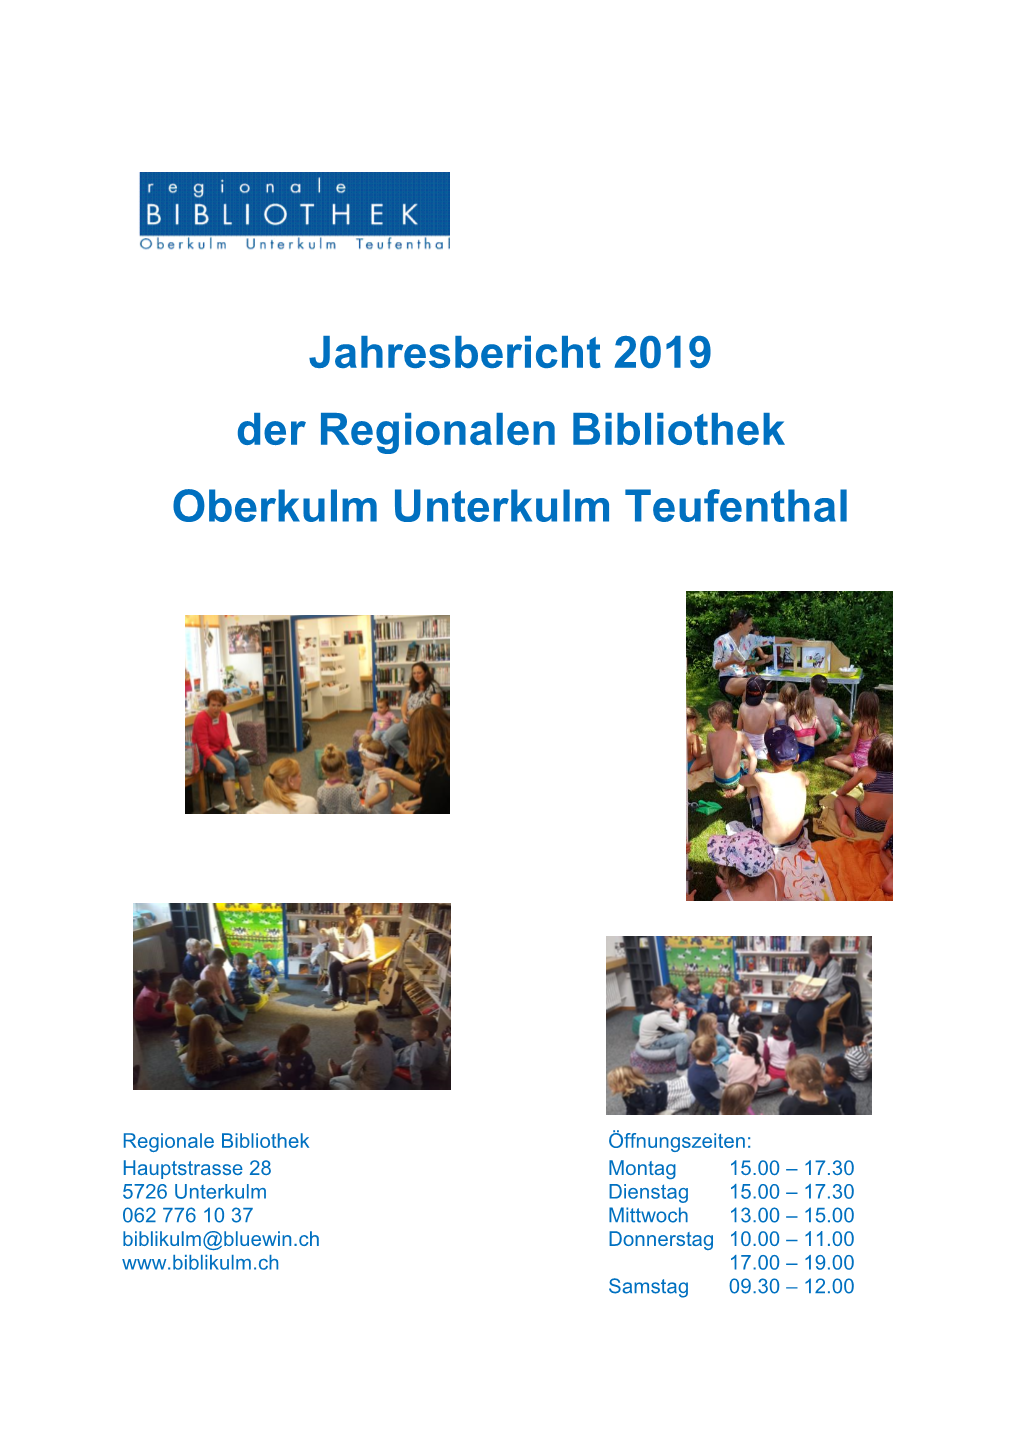 Jahresbericht 2019 Der Regionalen Bibliothek Oberkulm Unterkulm Teufenthal